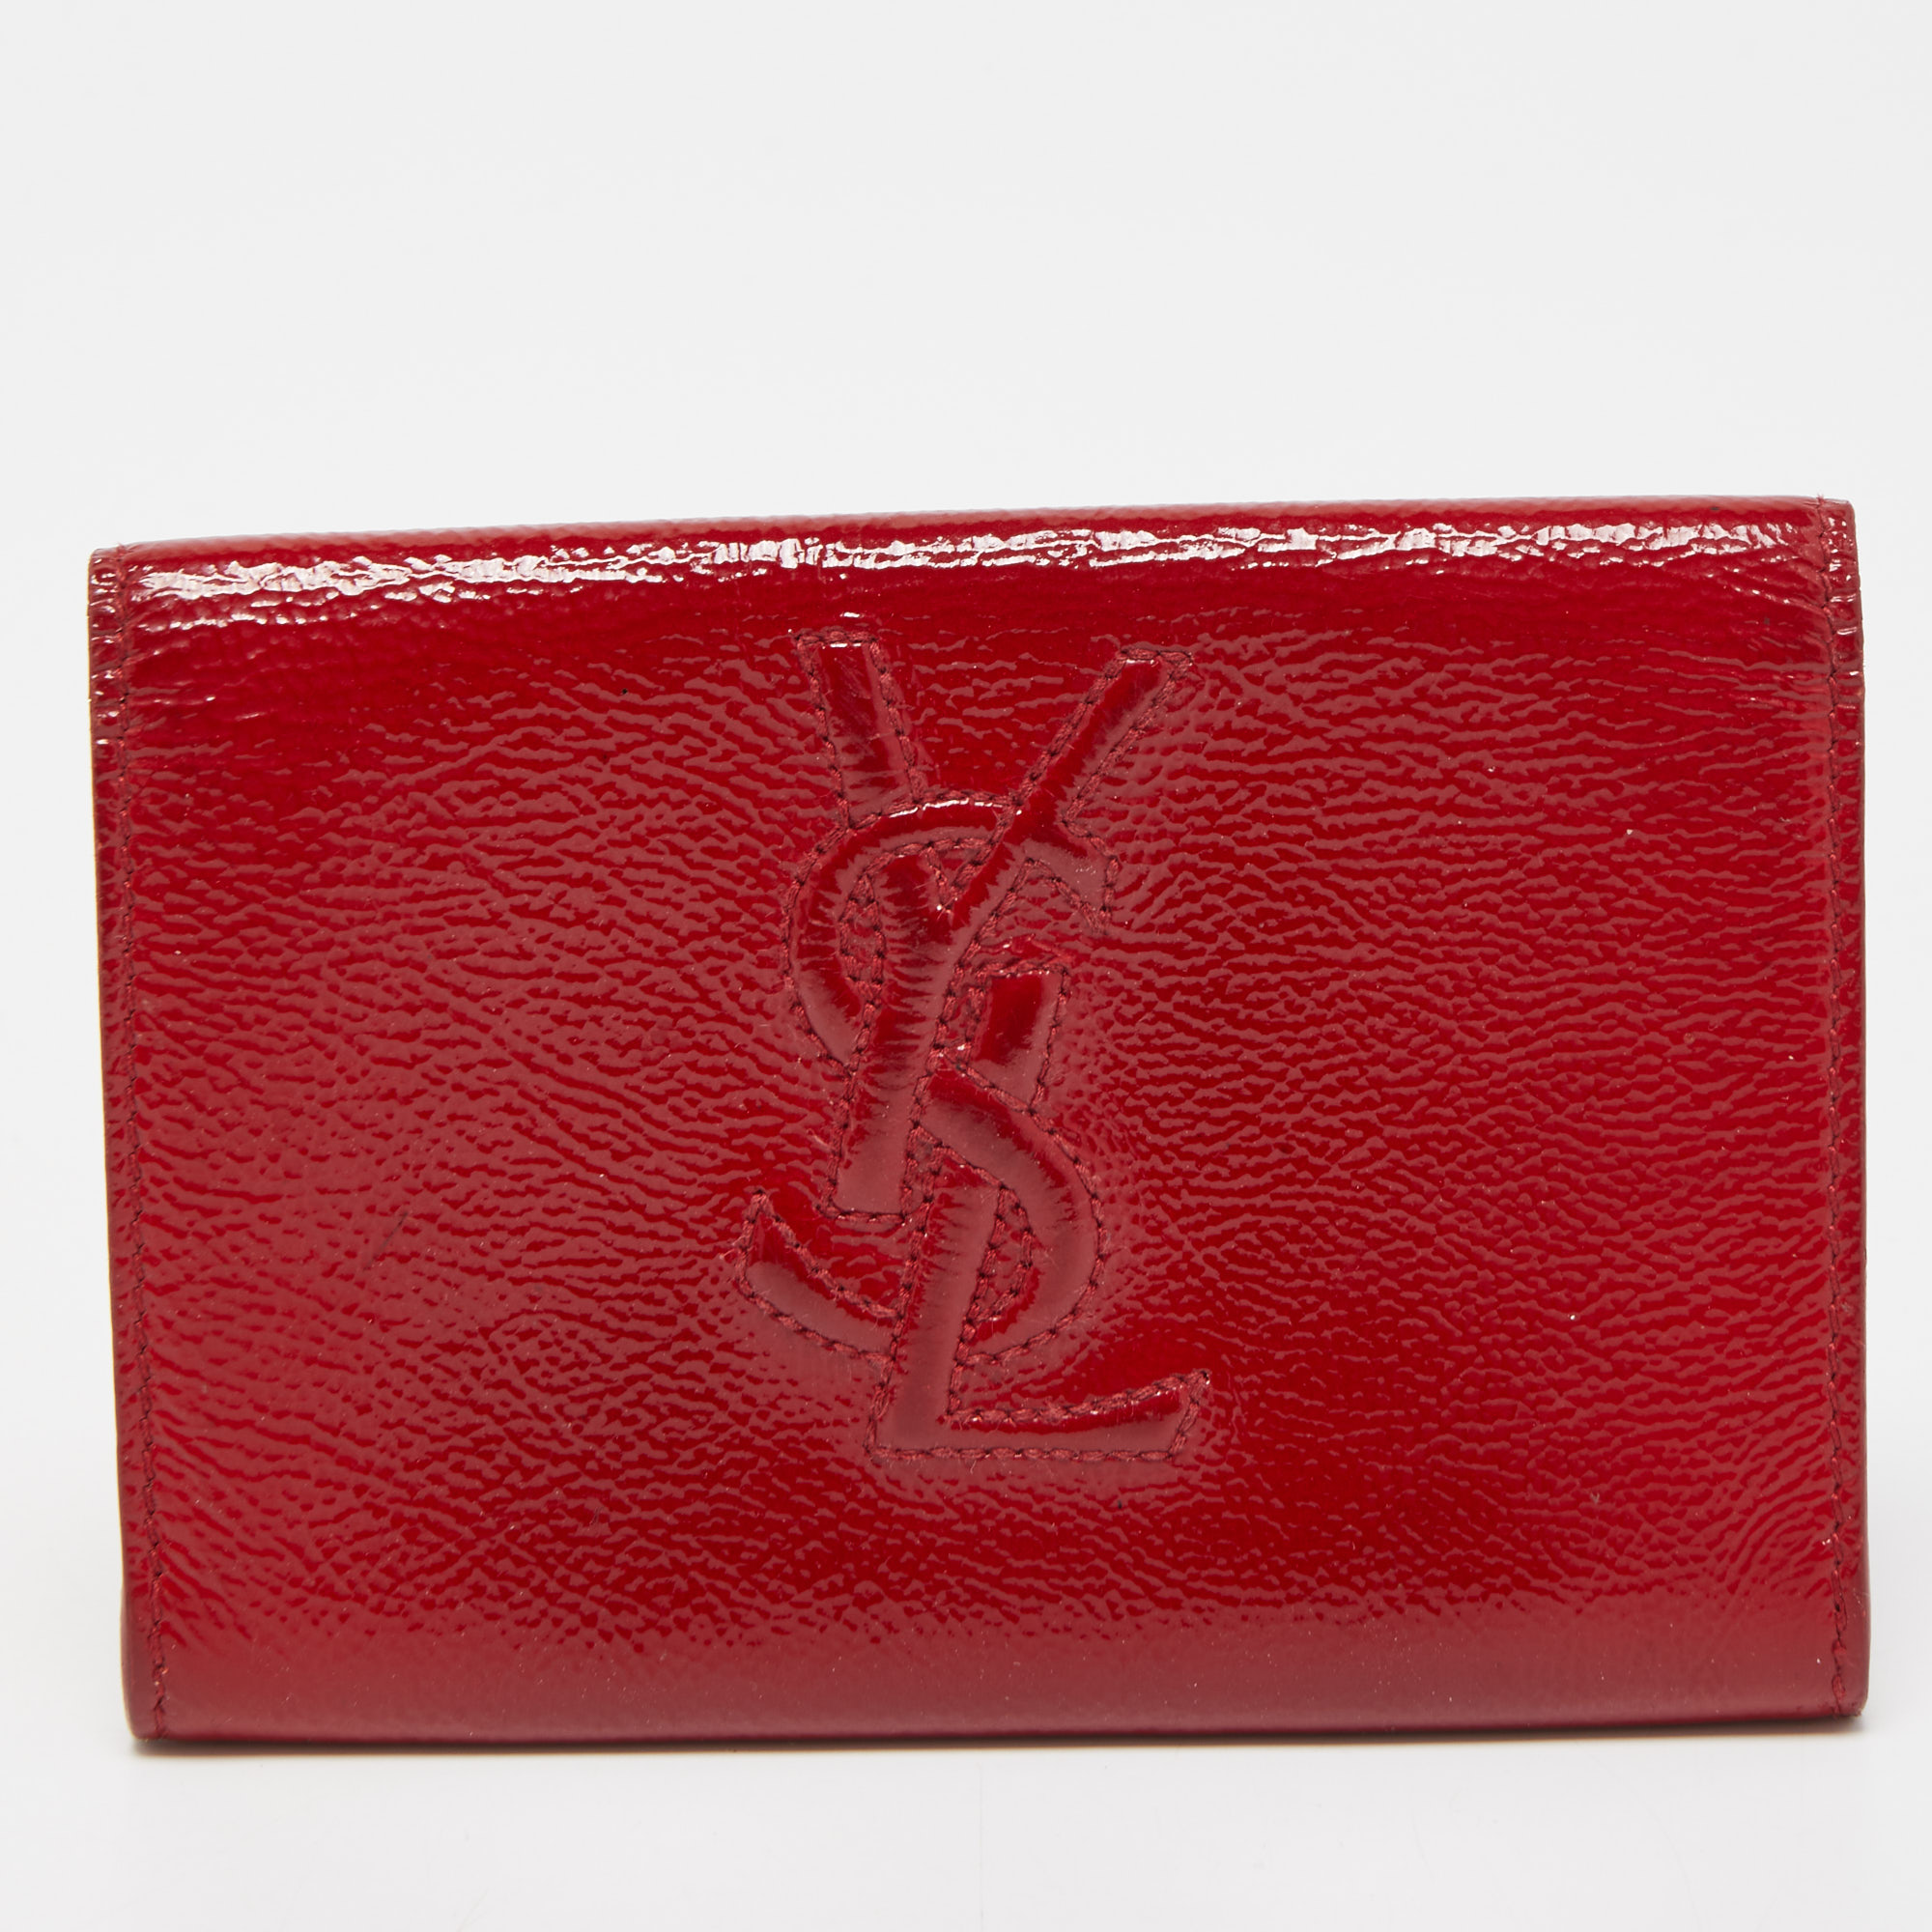 Yves Saint Laurent Red Patent Leather Belle De Jour Flap Compact Wallet